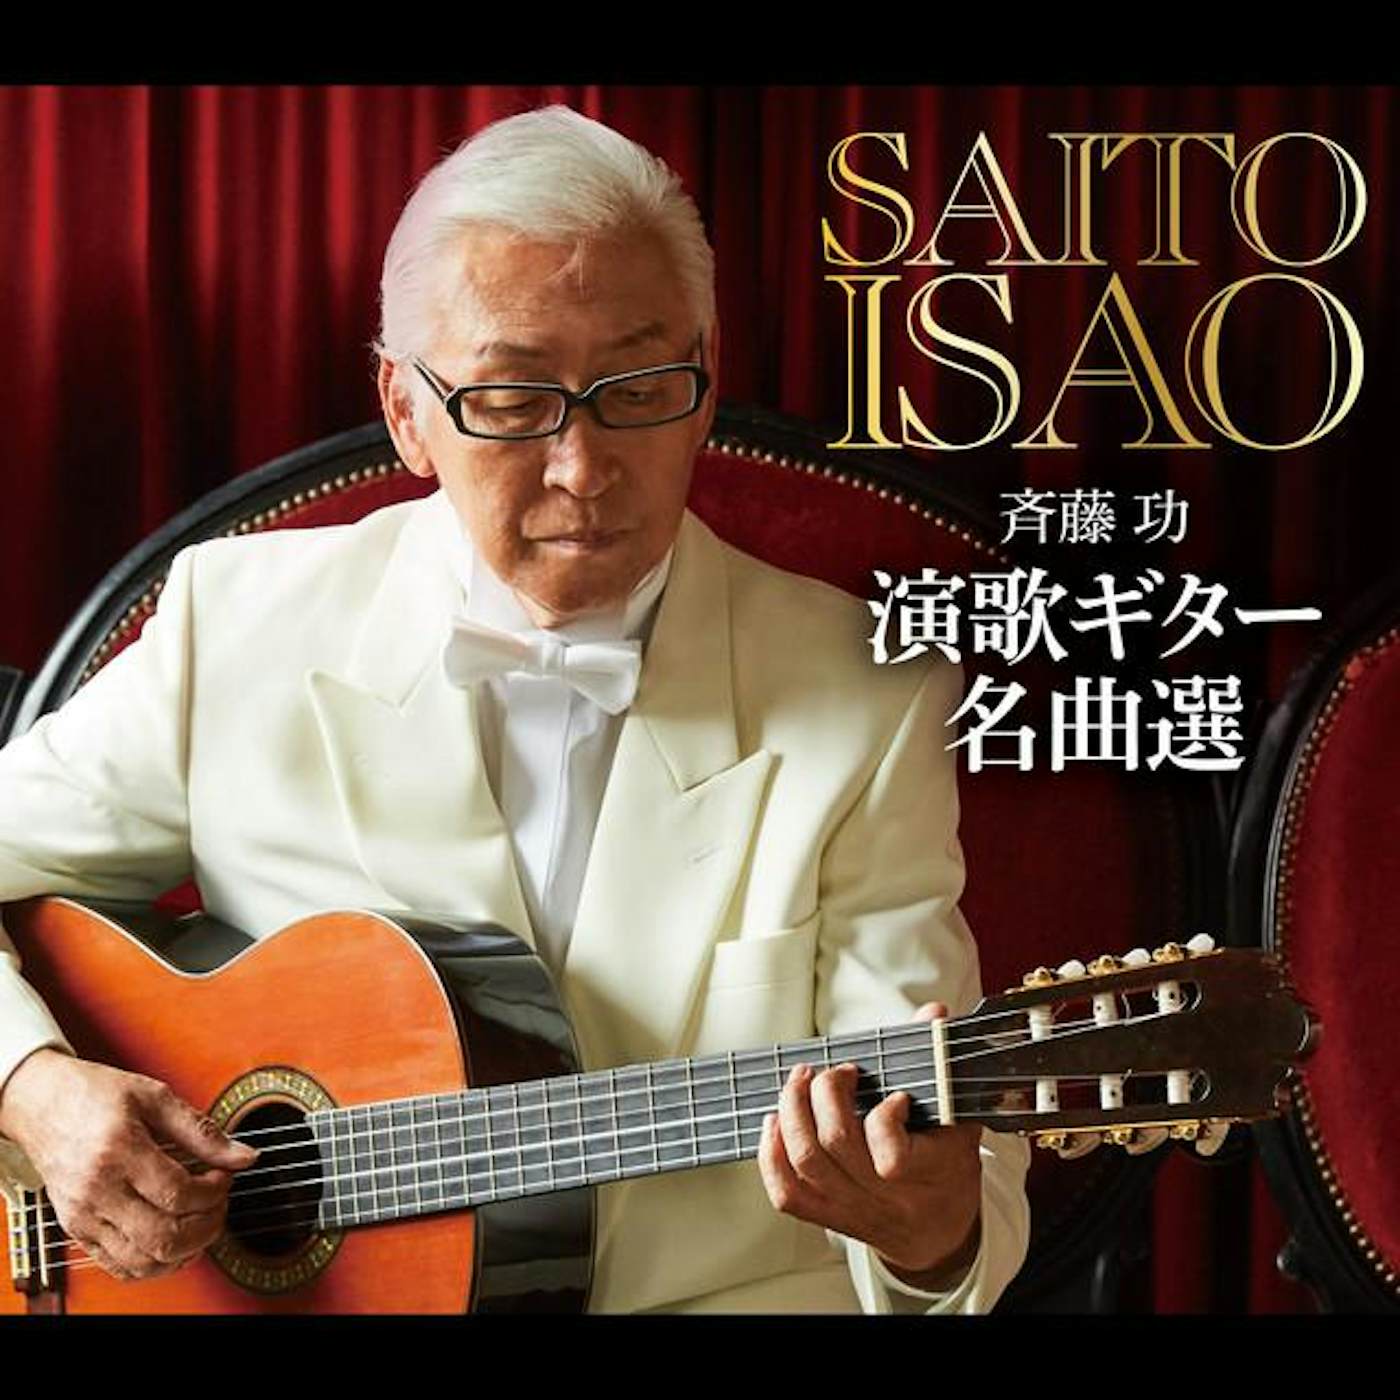 Isao Saito